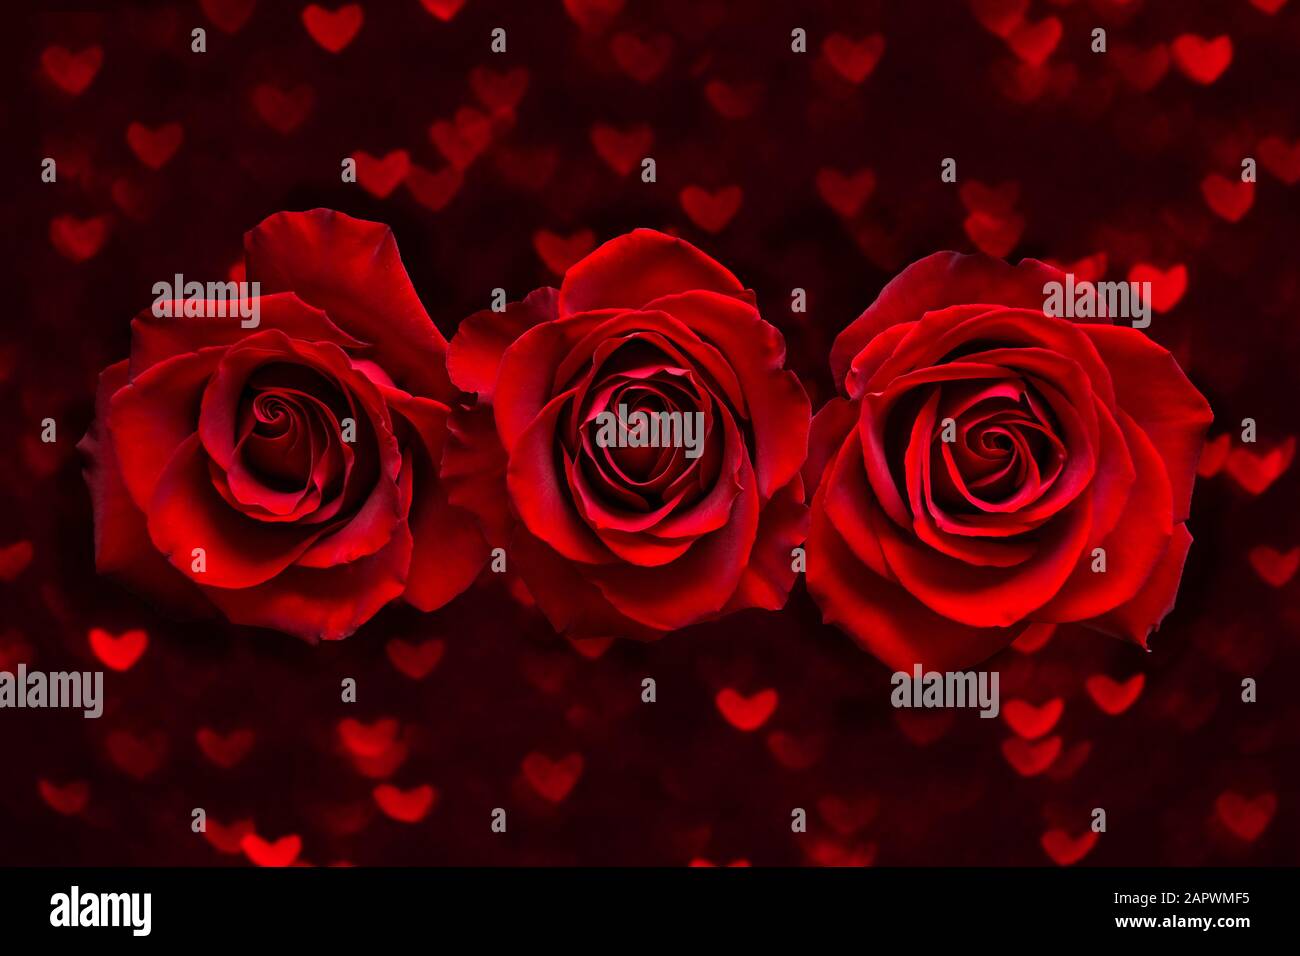 Biglietto giornaliero per San Valentino con tre rose rosse su sfondo nero di boke cuore. Concetto di Giornata dell'amore e del matrimonio. Foto Stock